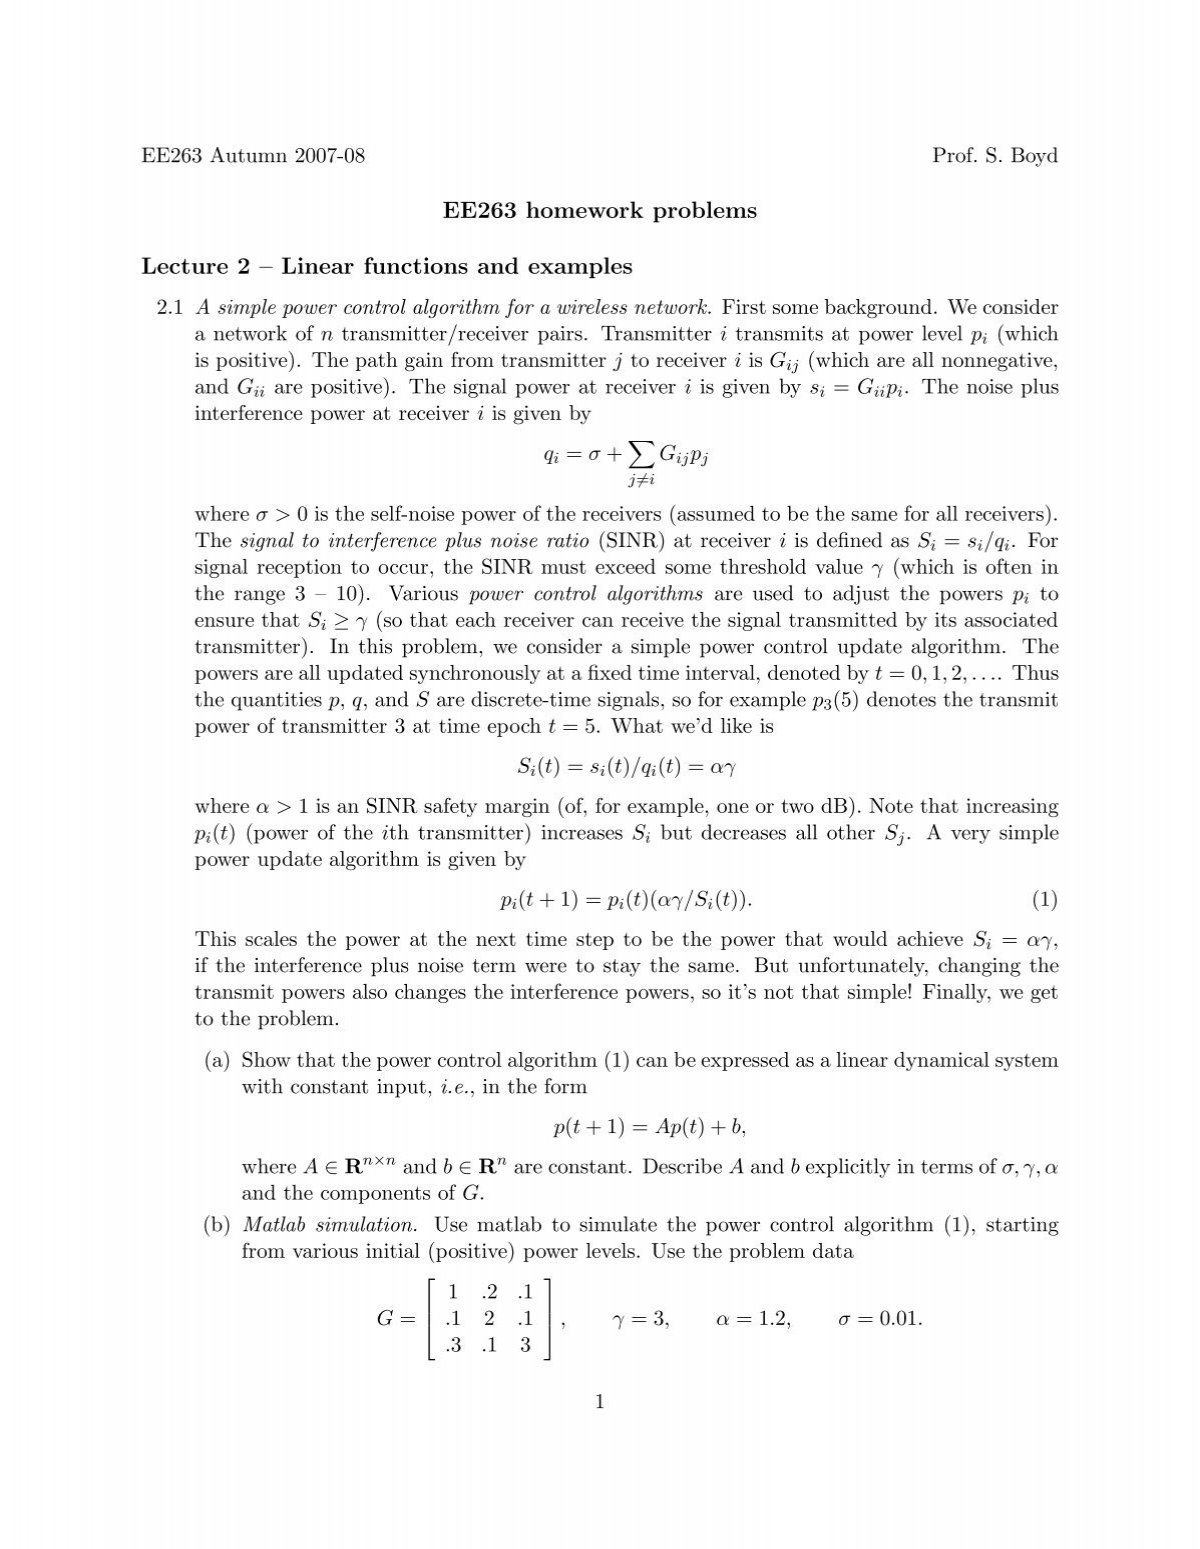 ee263 homework solutions